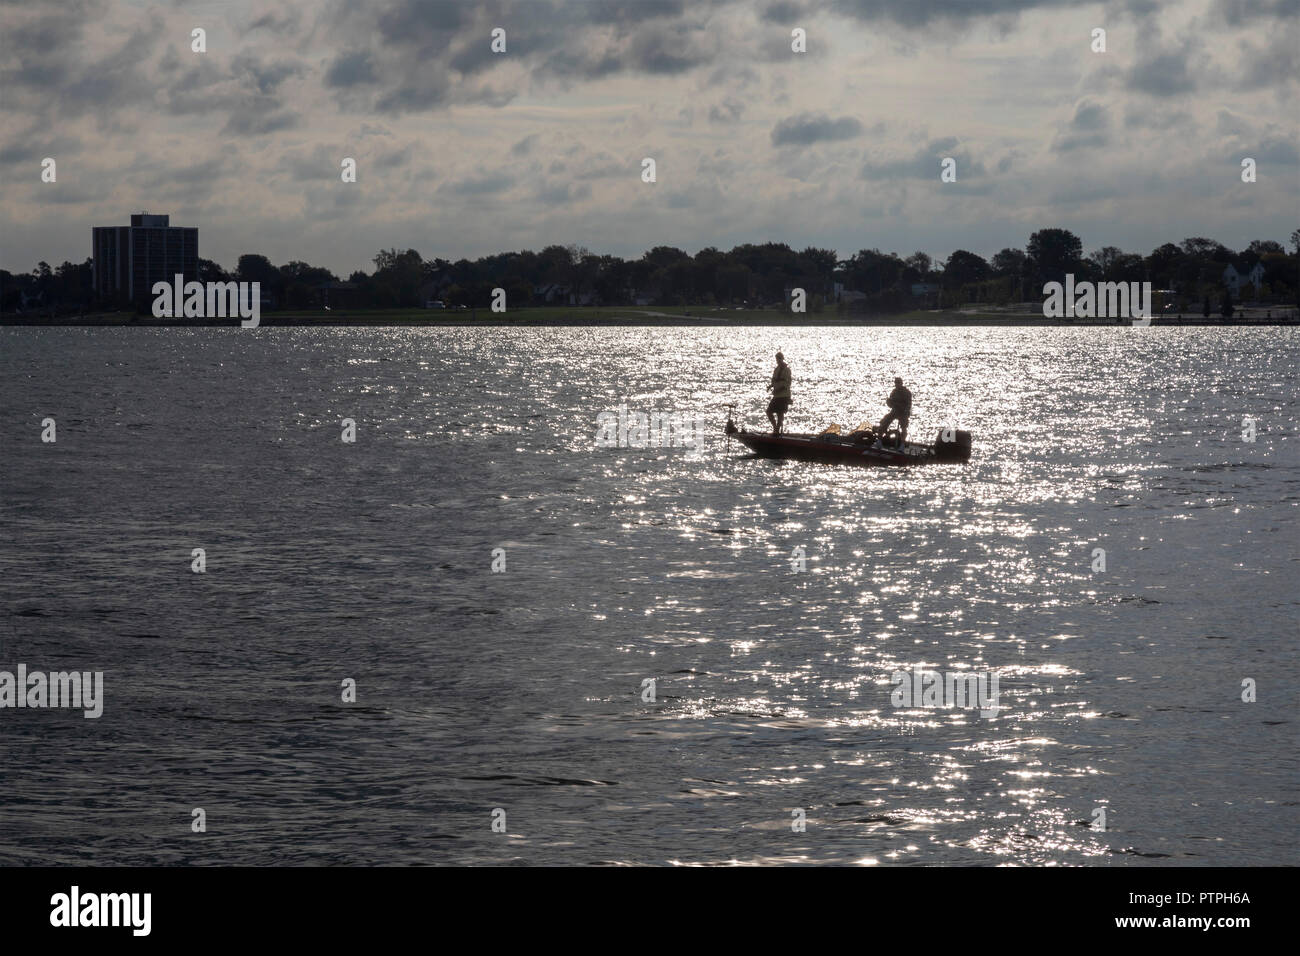 Detroit, Michigan - zwei Männer aus einem kleinen Boot auf dem Detroit River. Windsor, Ontario, Kanada ist auf der anderen Seite. Stockfoto